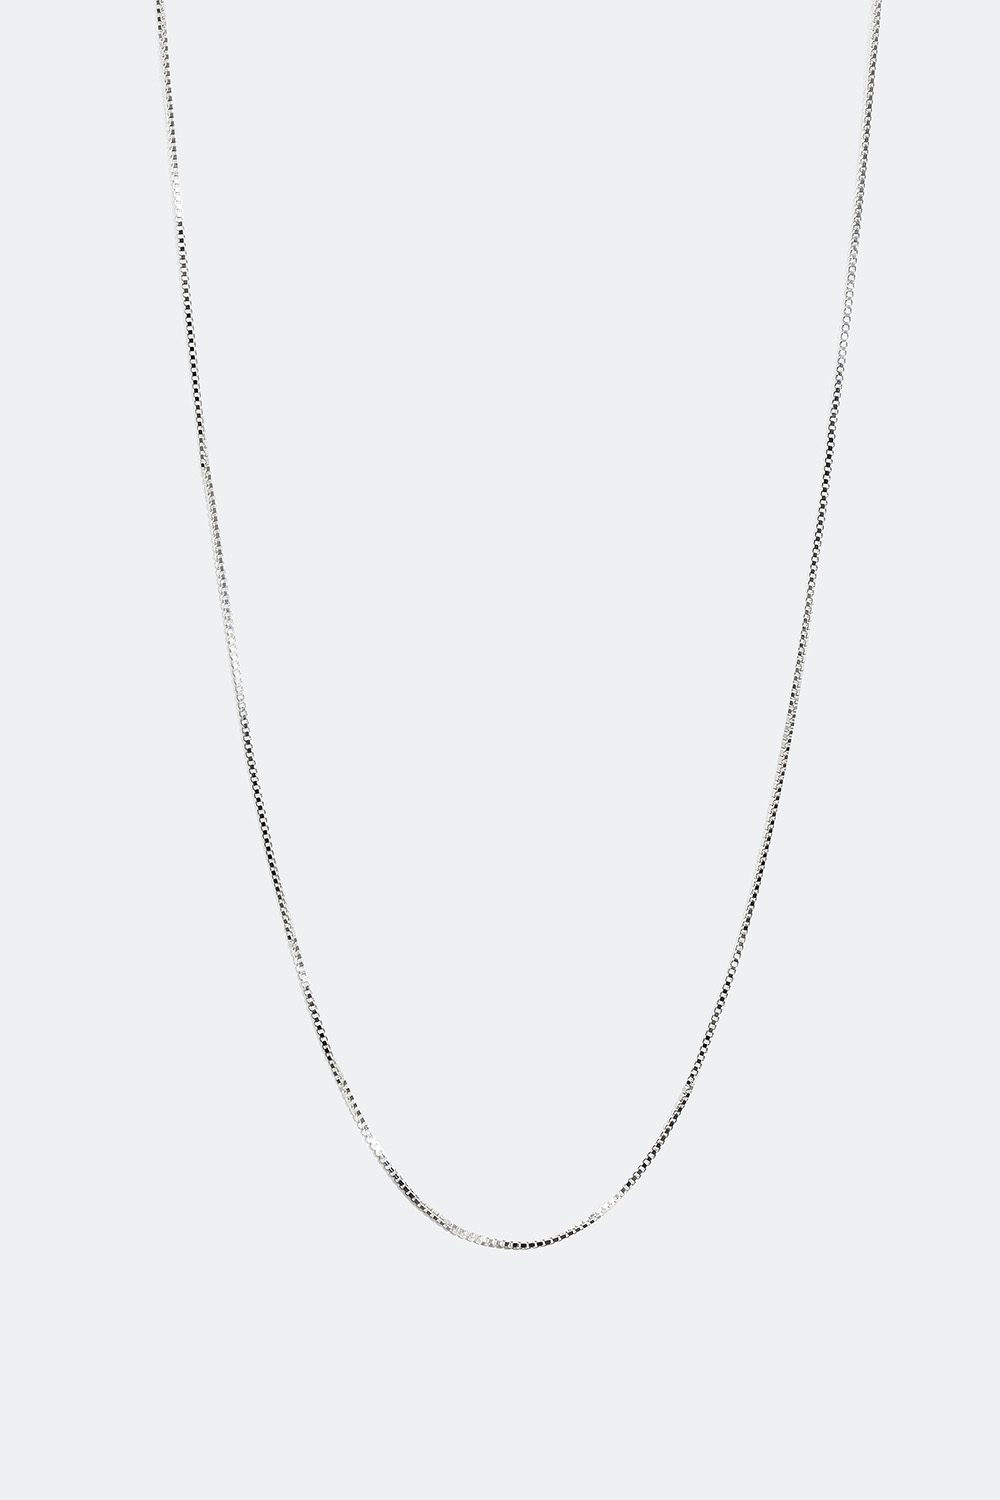 Veneziahalskæde i ægte sølv, 55 cm i gruppen Ægte sølv / Sølvhalskæder / Kæder i ægte sølv hos Glitter (554000371060)